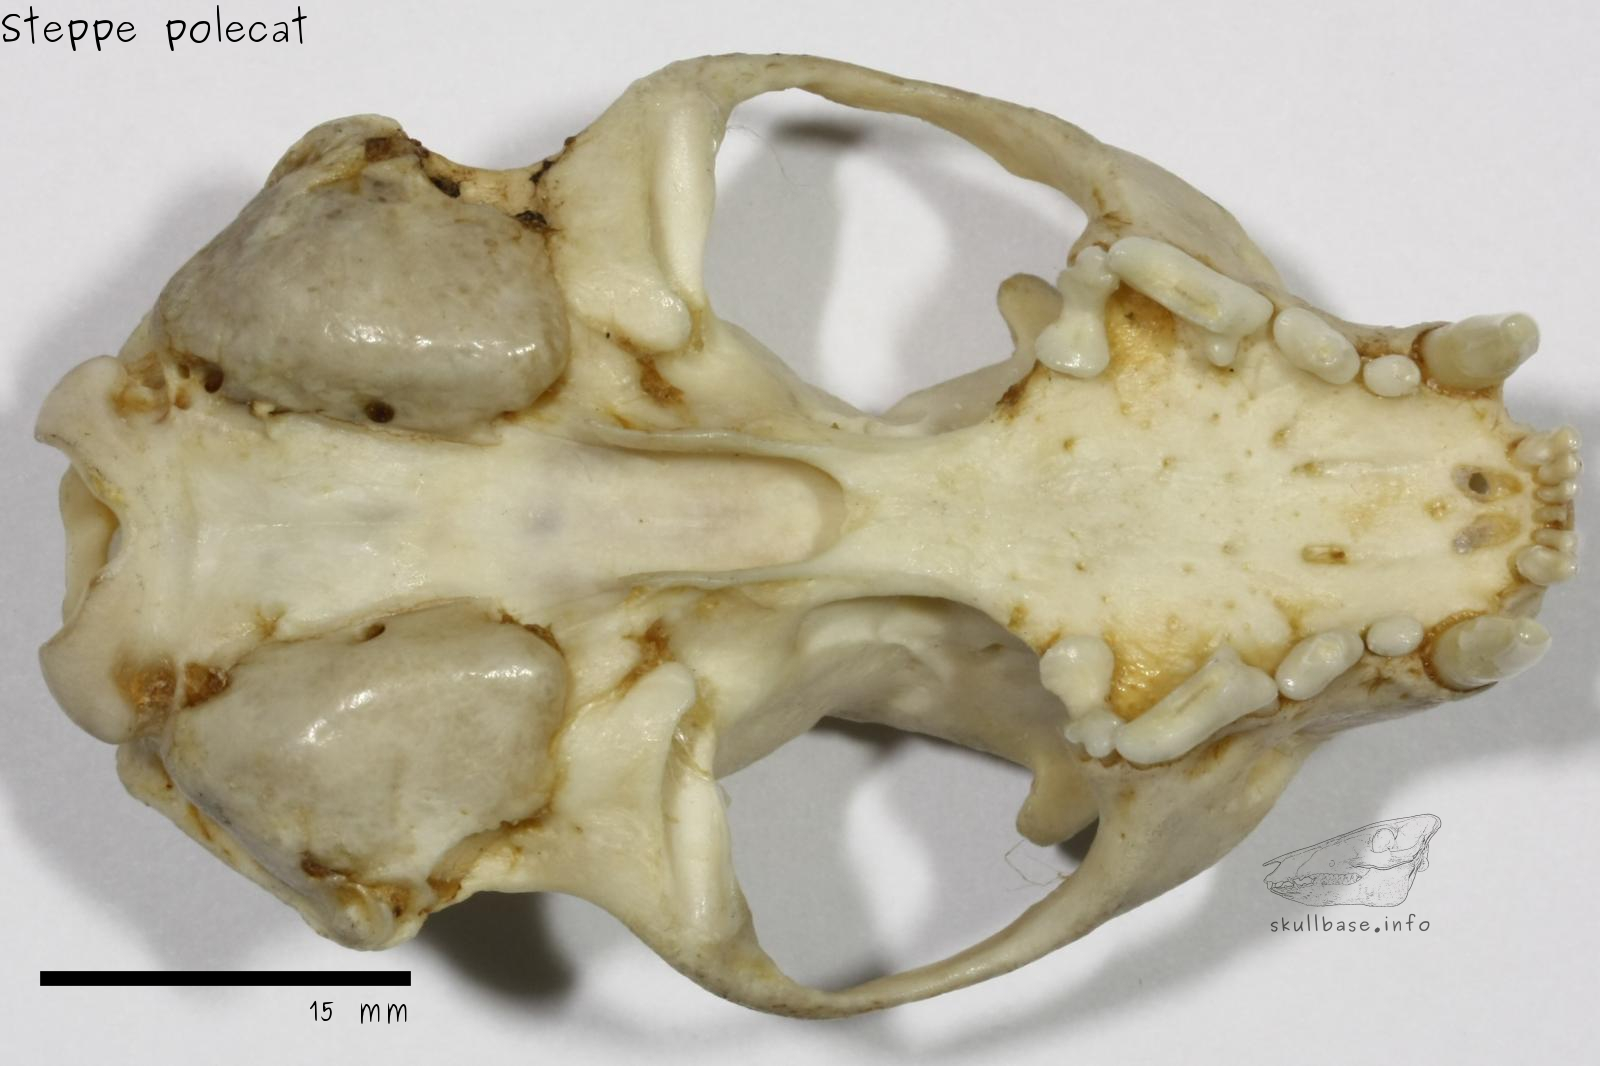 Steppe polecat (Mustela eversmanii) skull ventral view